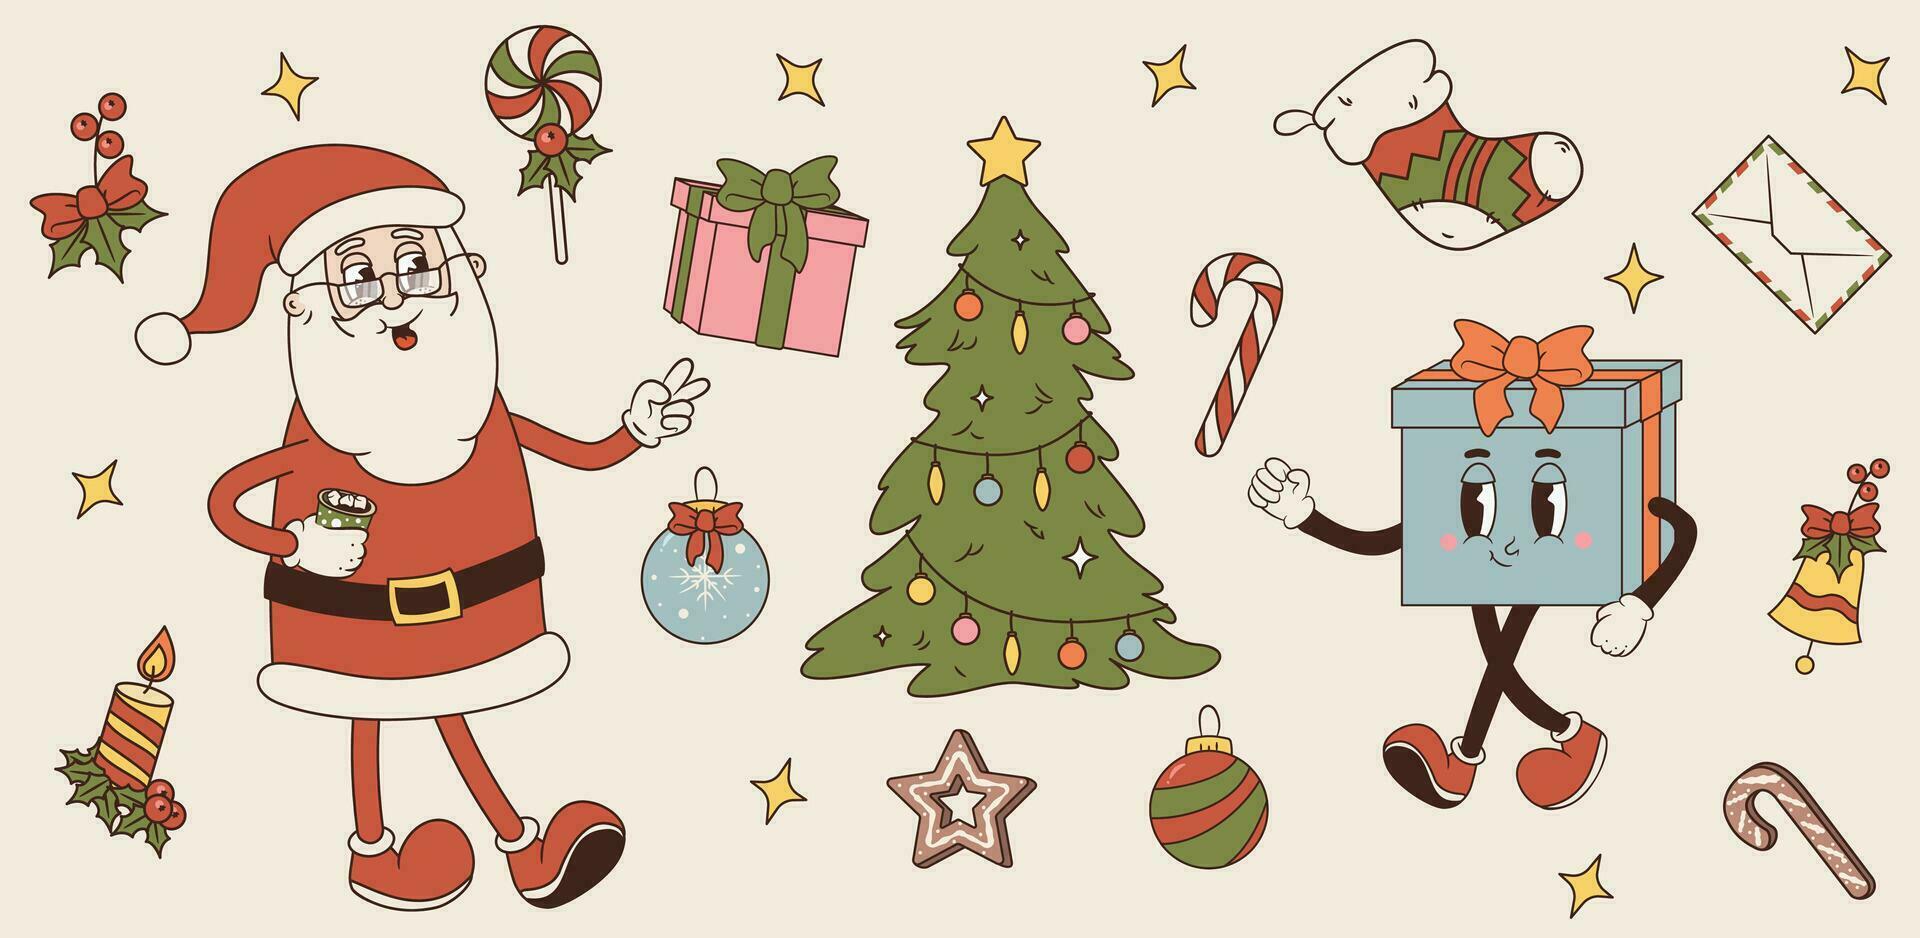 vector conjunto de alegre Navidad y contento nuevo año simbolos ilustraciones de retro Navidad árbol, regalo personaje, Papa Noel noel, panes de jengibre, dulce, vela, adornos, campana y arco con acebo baya